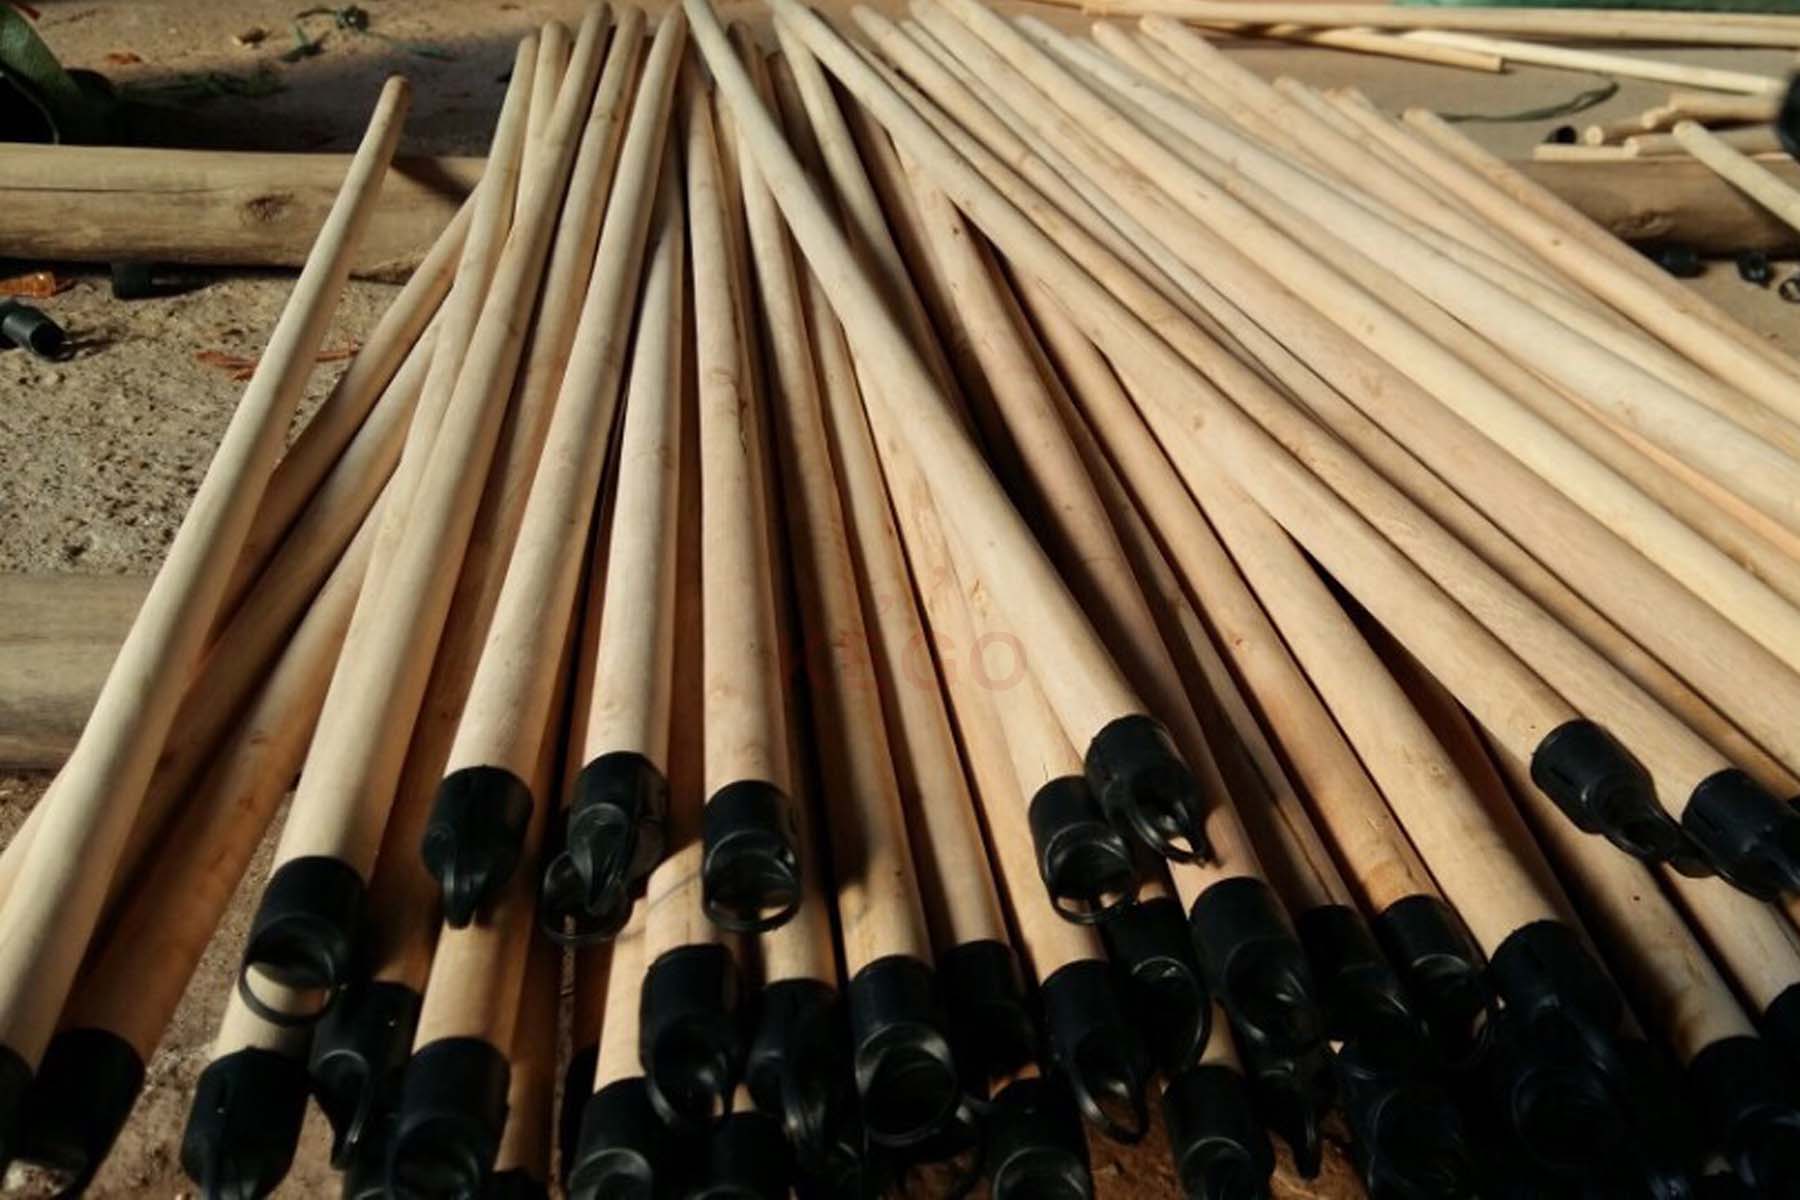 https://kego.com.vn/wp-content/uploads/2015/09/wooden-broom-handle-kego-19.jpg